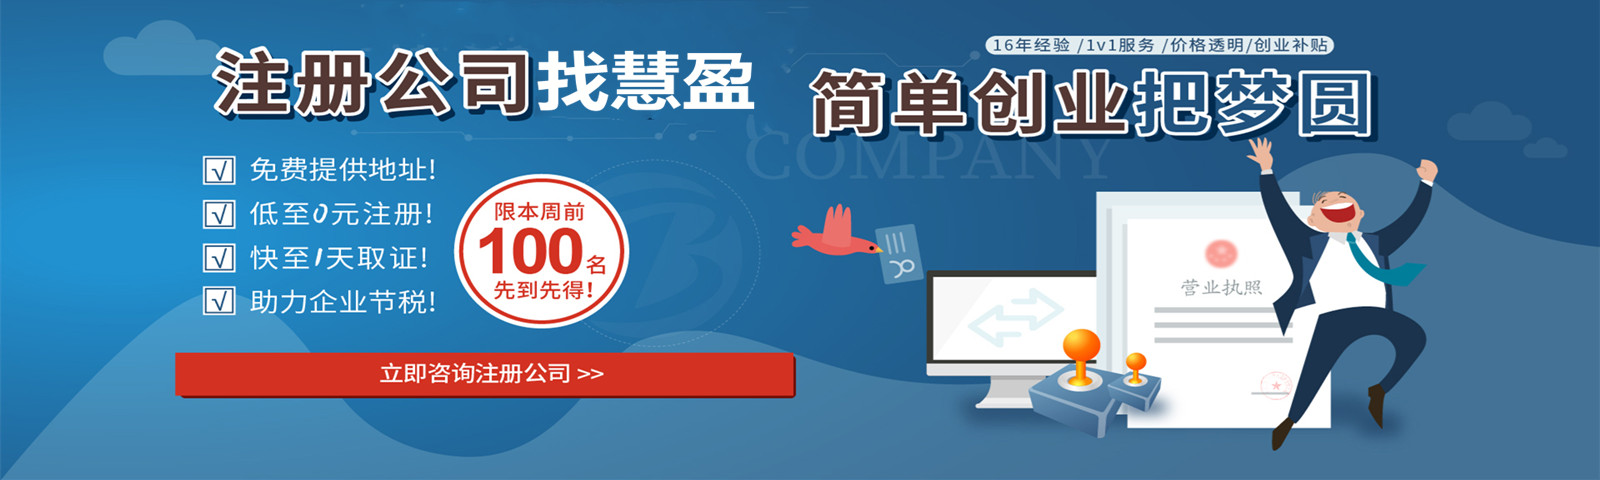 关于当前产品9570官方金沙登录手机应用下载·(中国)官方网站的成功案例等相关图片